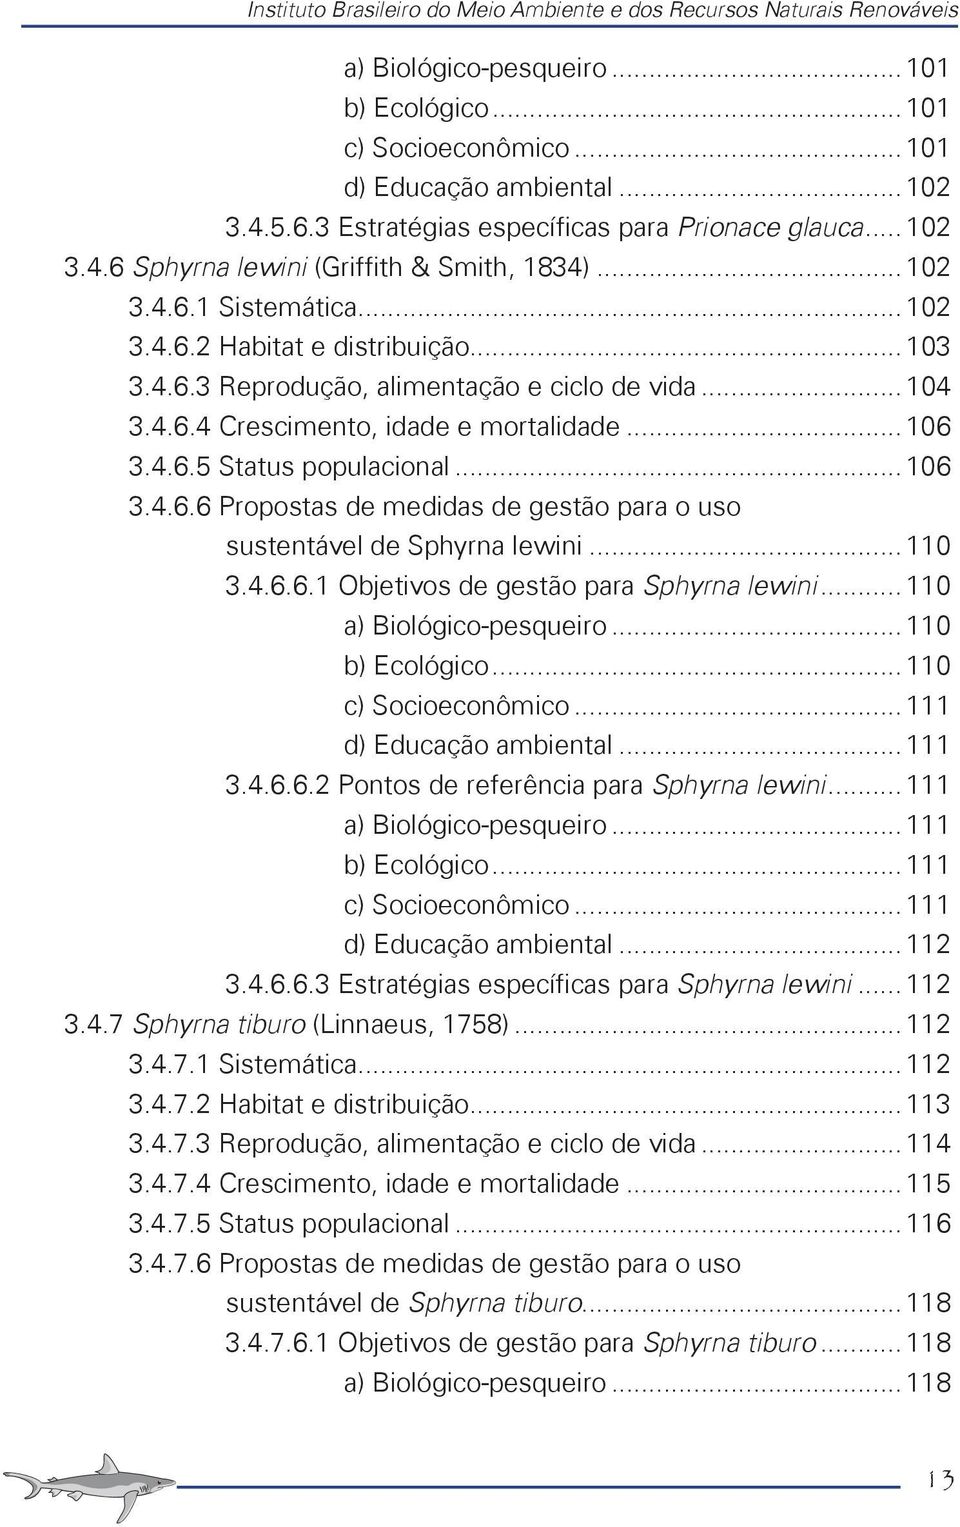 .. 104 3.4.6.4 Crescimento, idade e mortalidade... 106 3.4.6.5 Status populacional... 106 3.4.6.6 Propostas de medidas de gestão para o uso sustentável de Sphyrna lewini... 110 3.4.6.6.1 Objetivos de gestão para Sphyrna lewini.